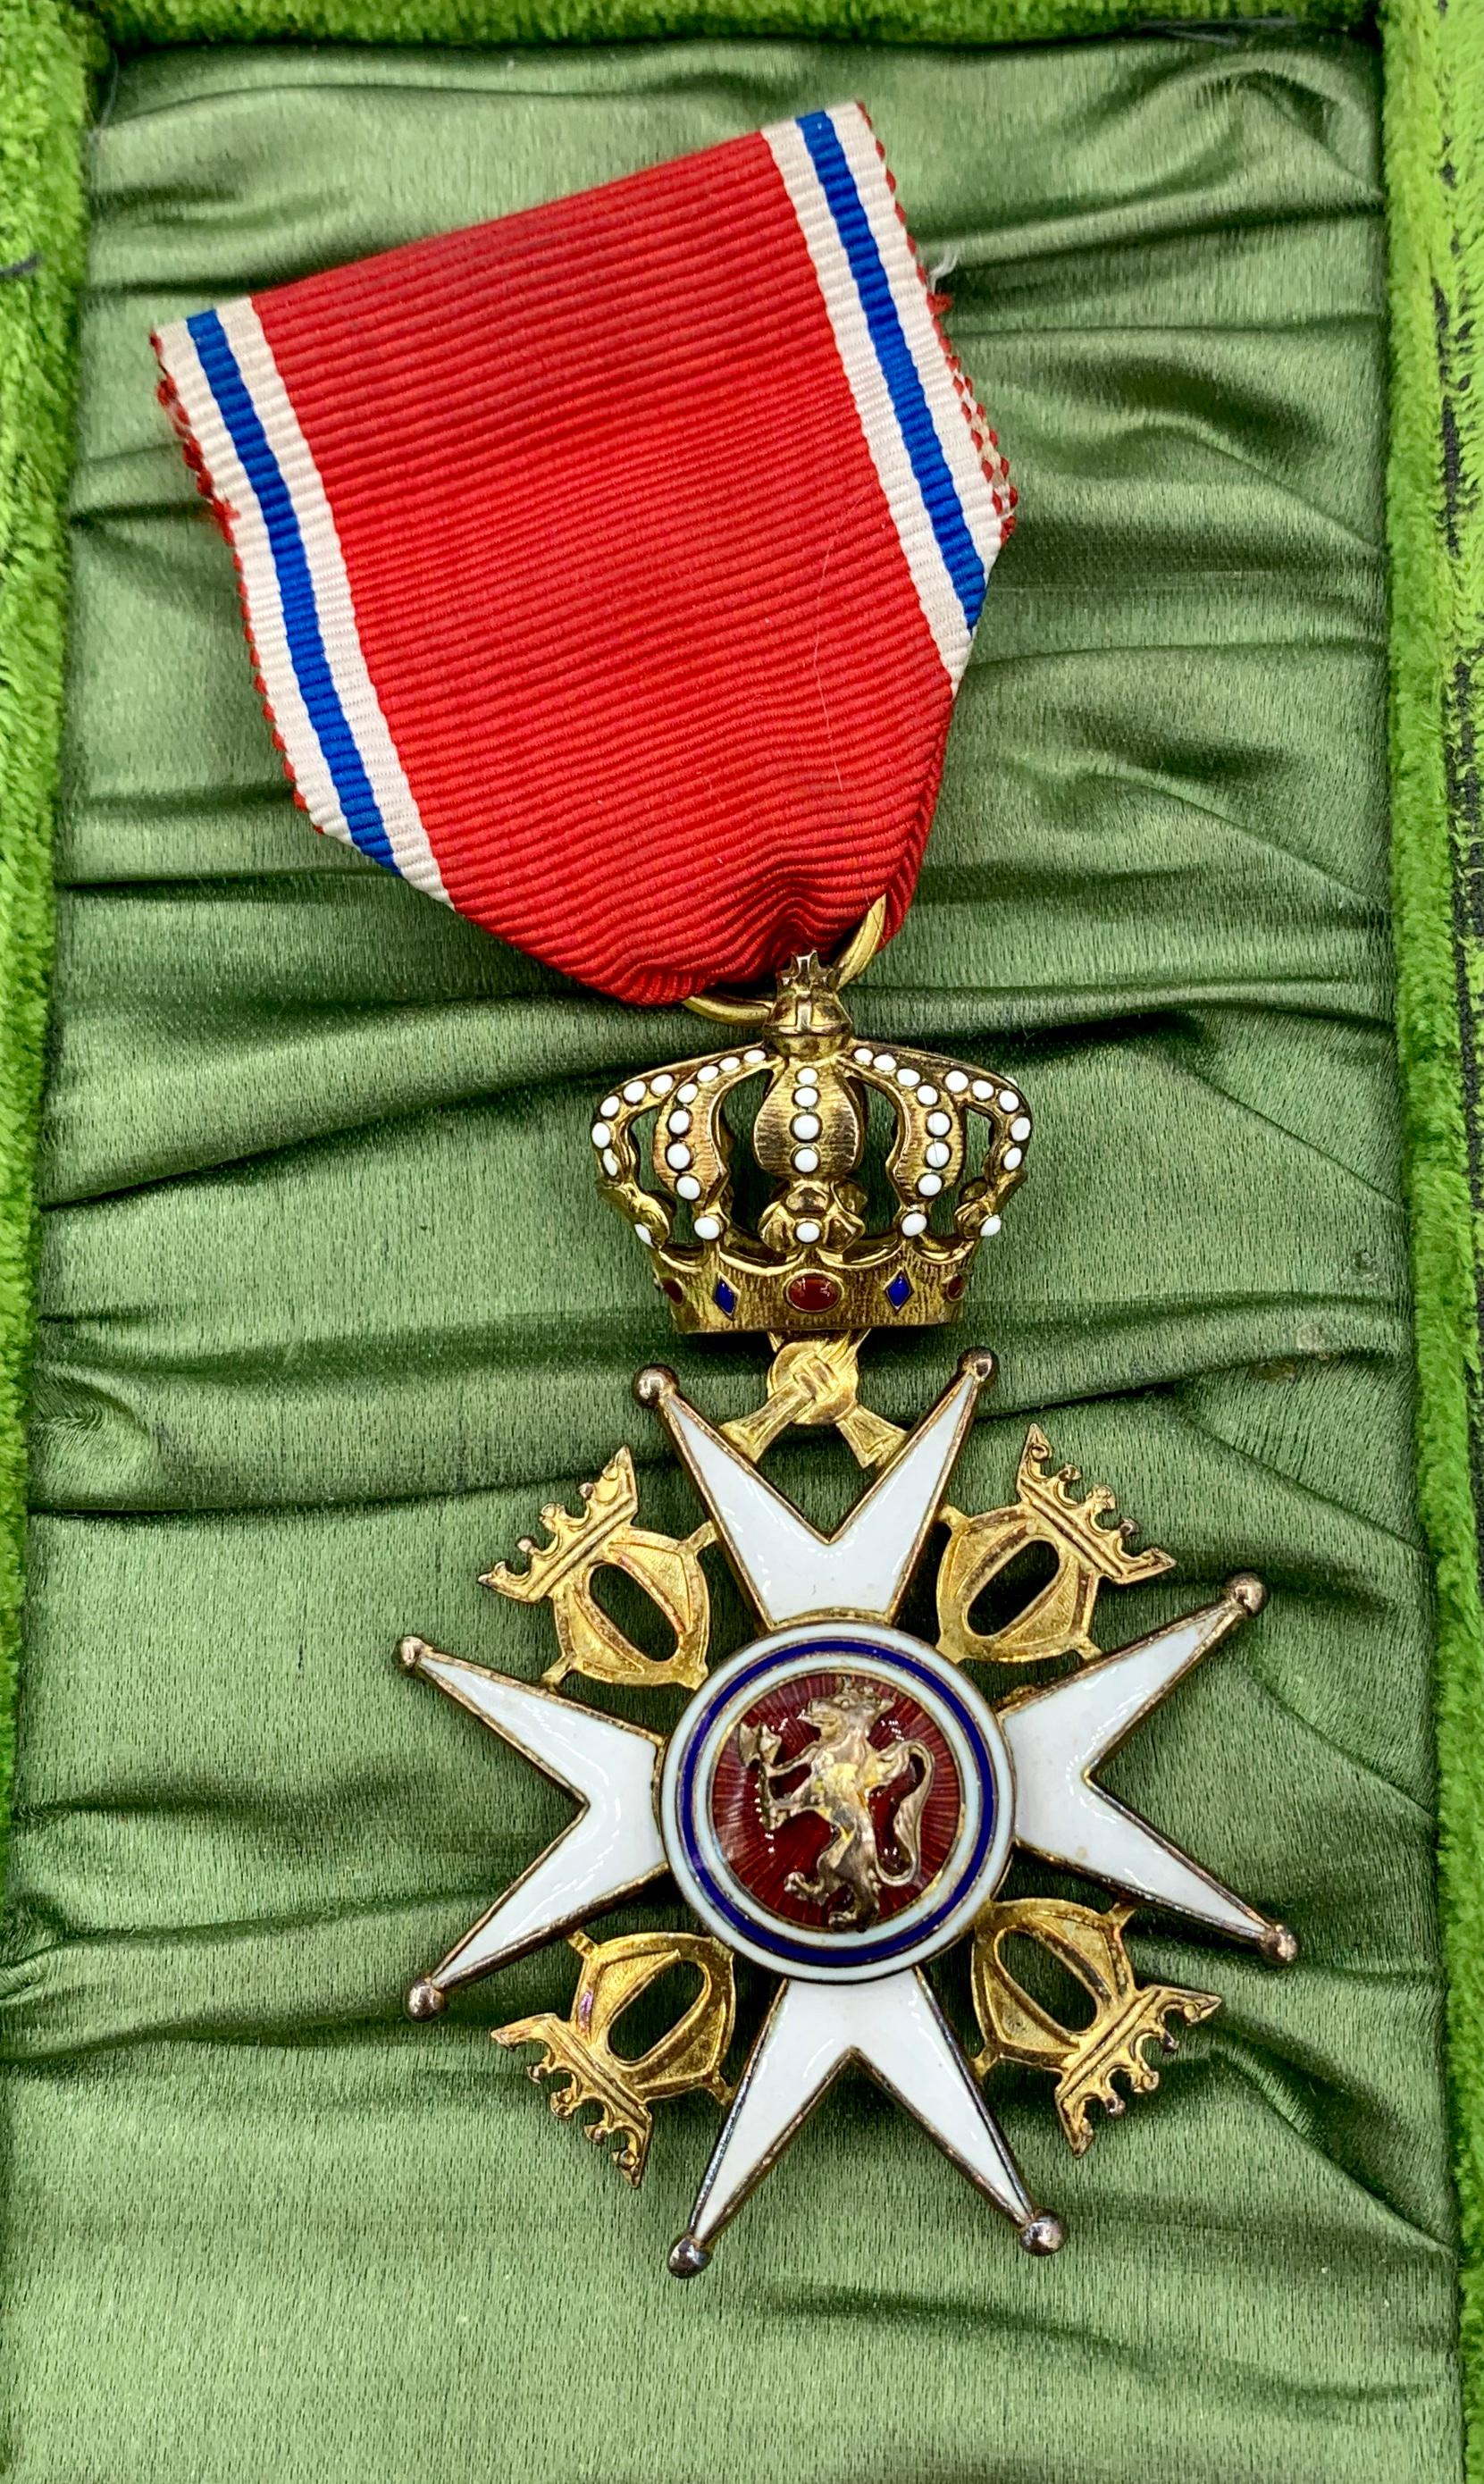 Belle Époque Royal Norwegian Order of Saint Olav Presented to Oscar Winner Celeste Holm For Sale